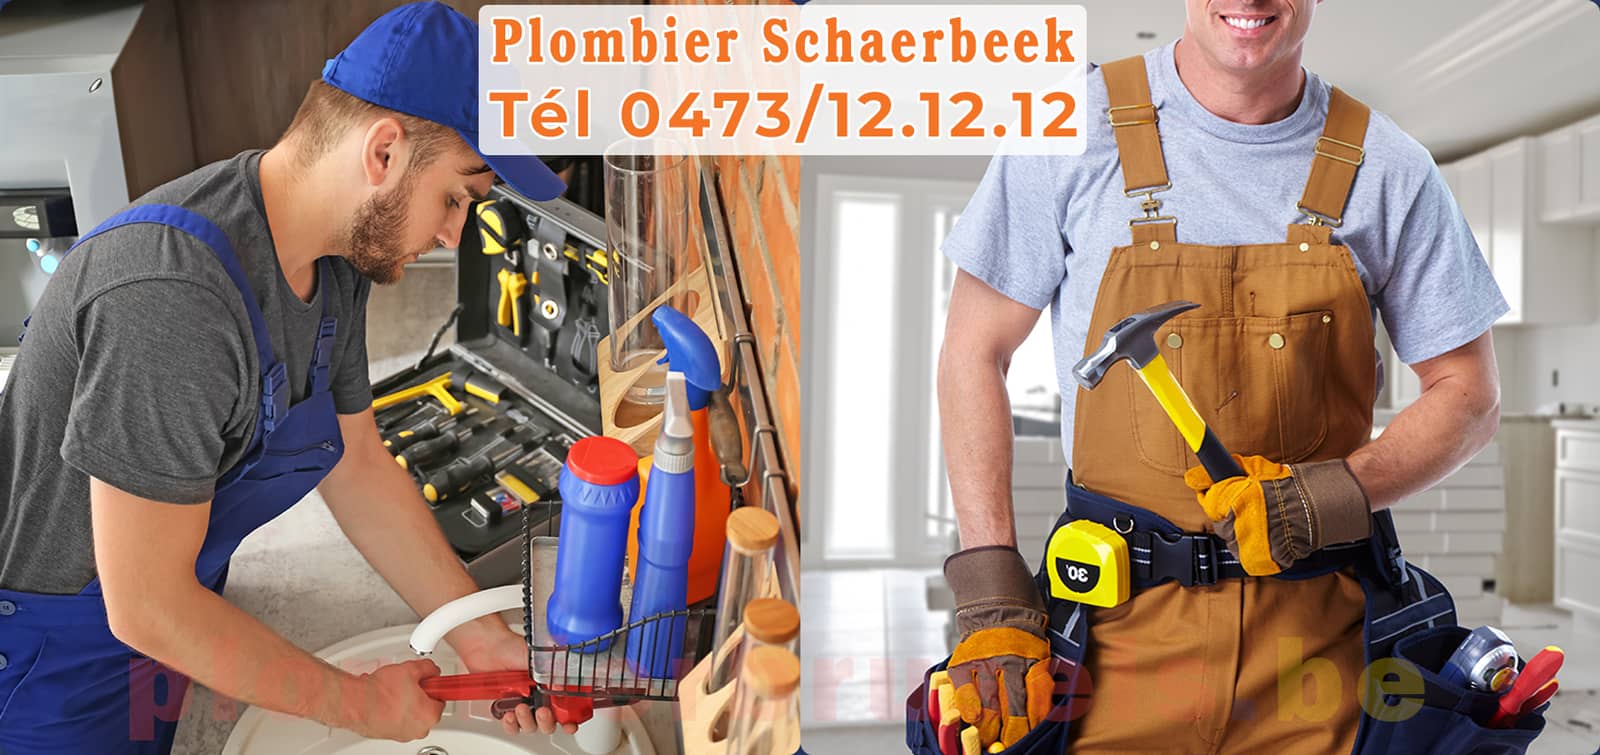 Plombier Schaerbeek service de Plomberie tél 0473/12.12.12